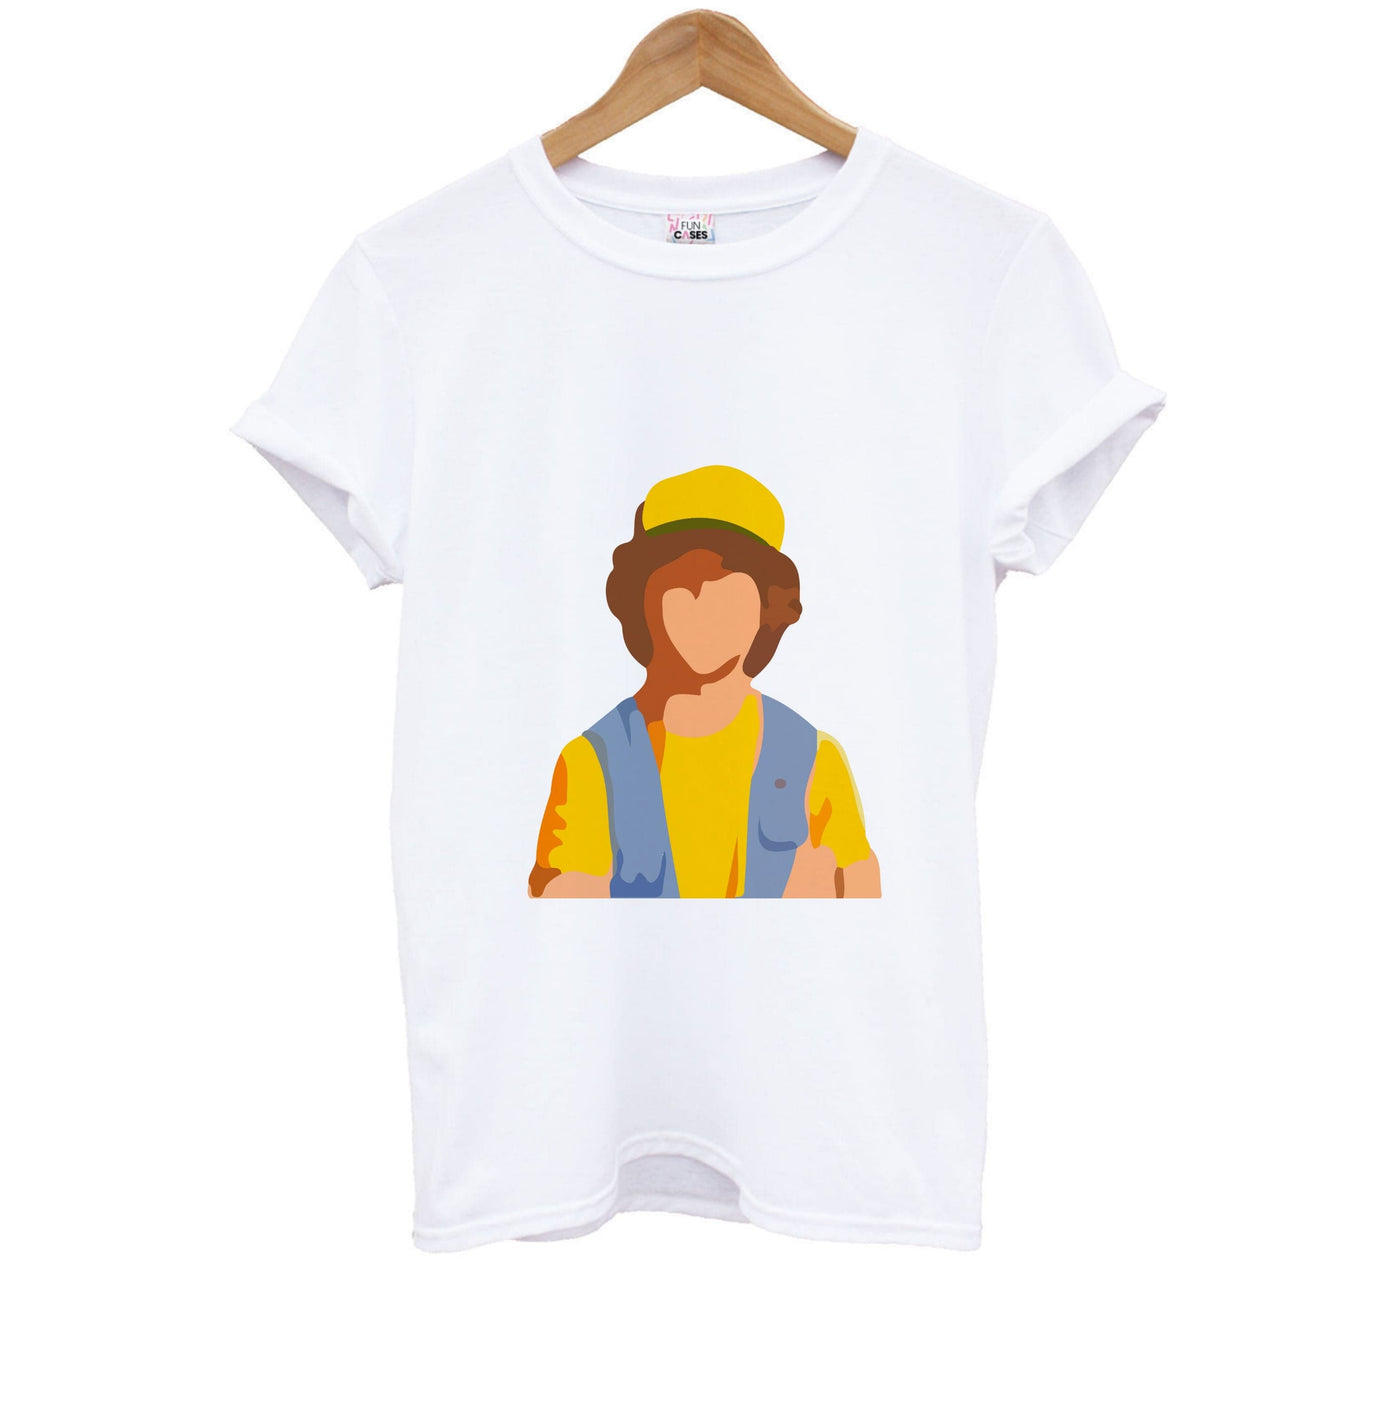 Faceless Dustin - Stranger Things Kids T-Shirt